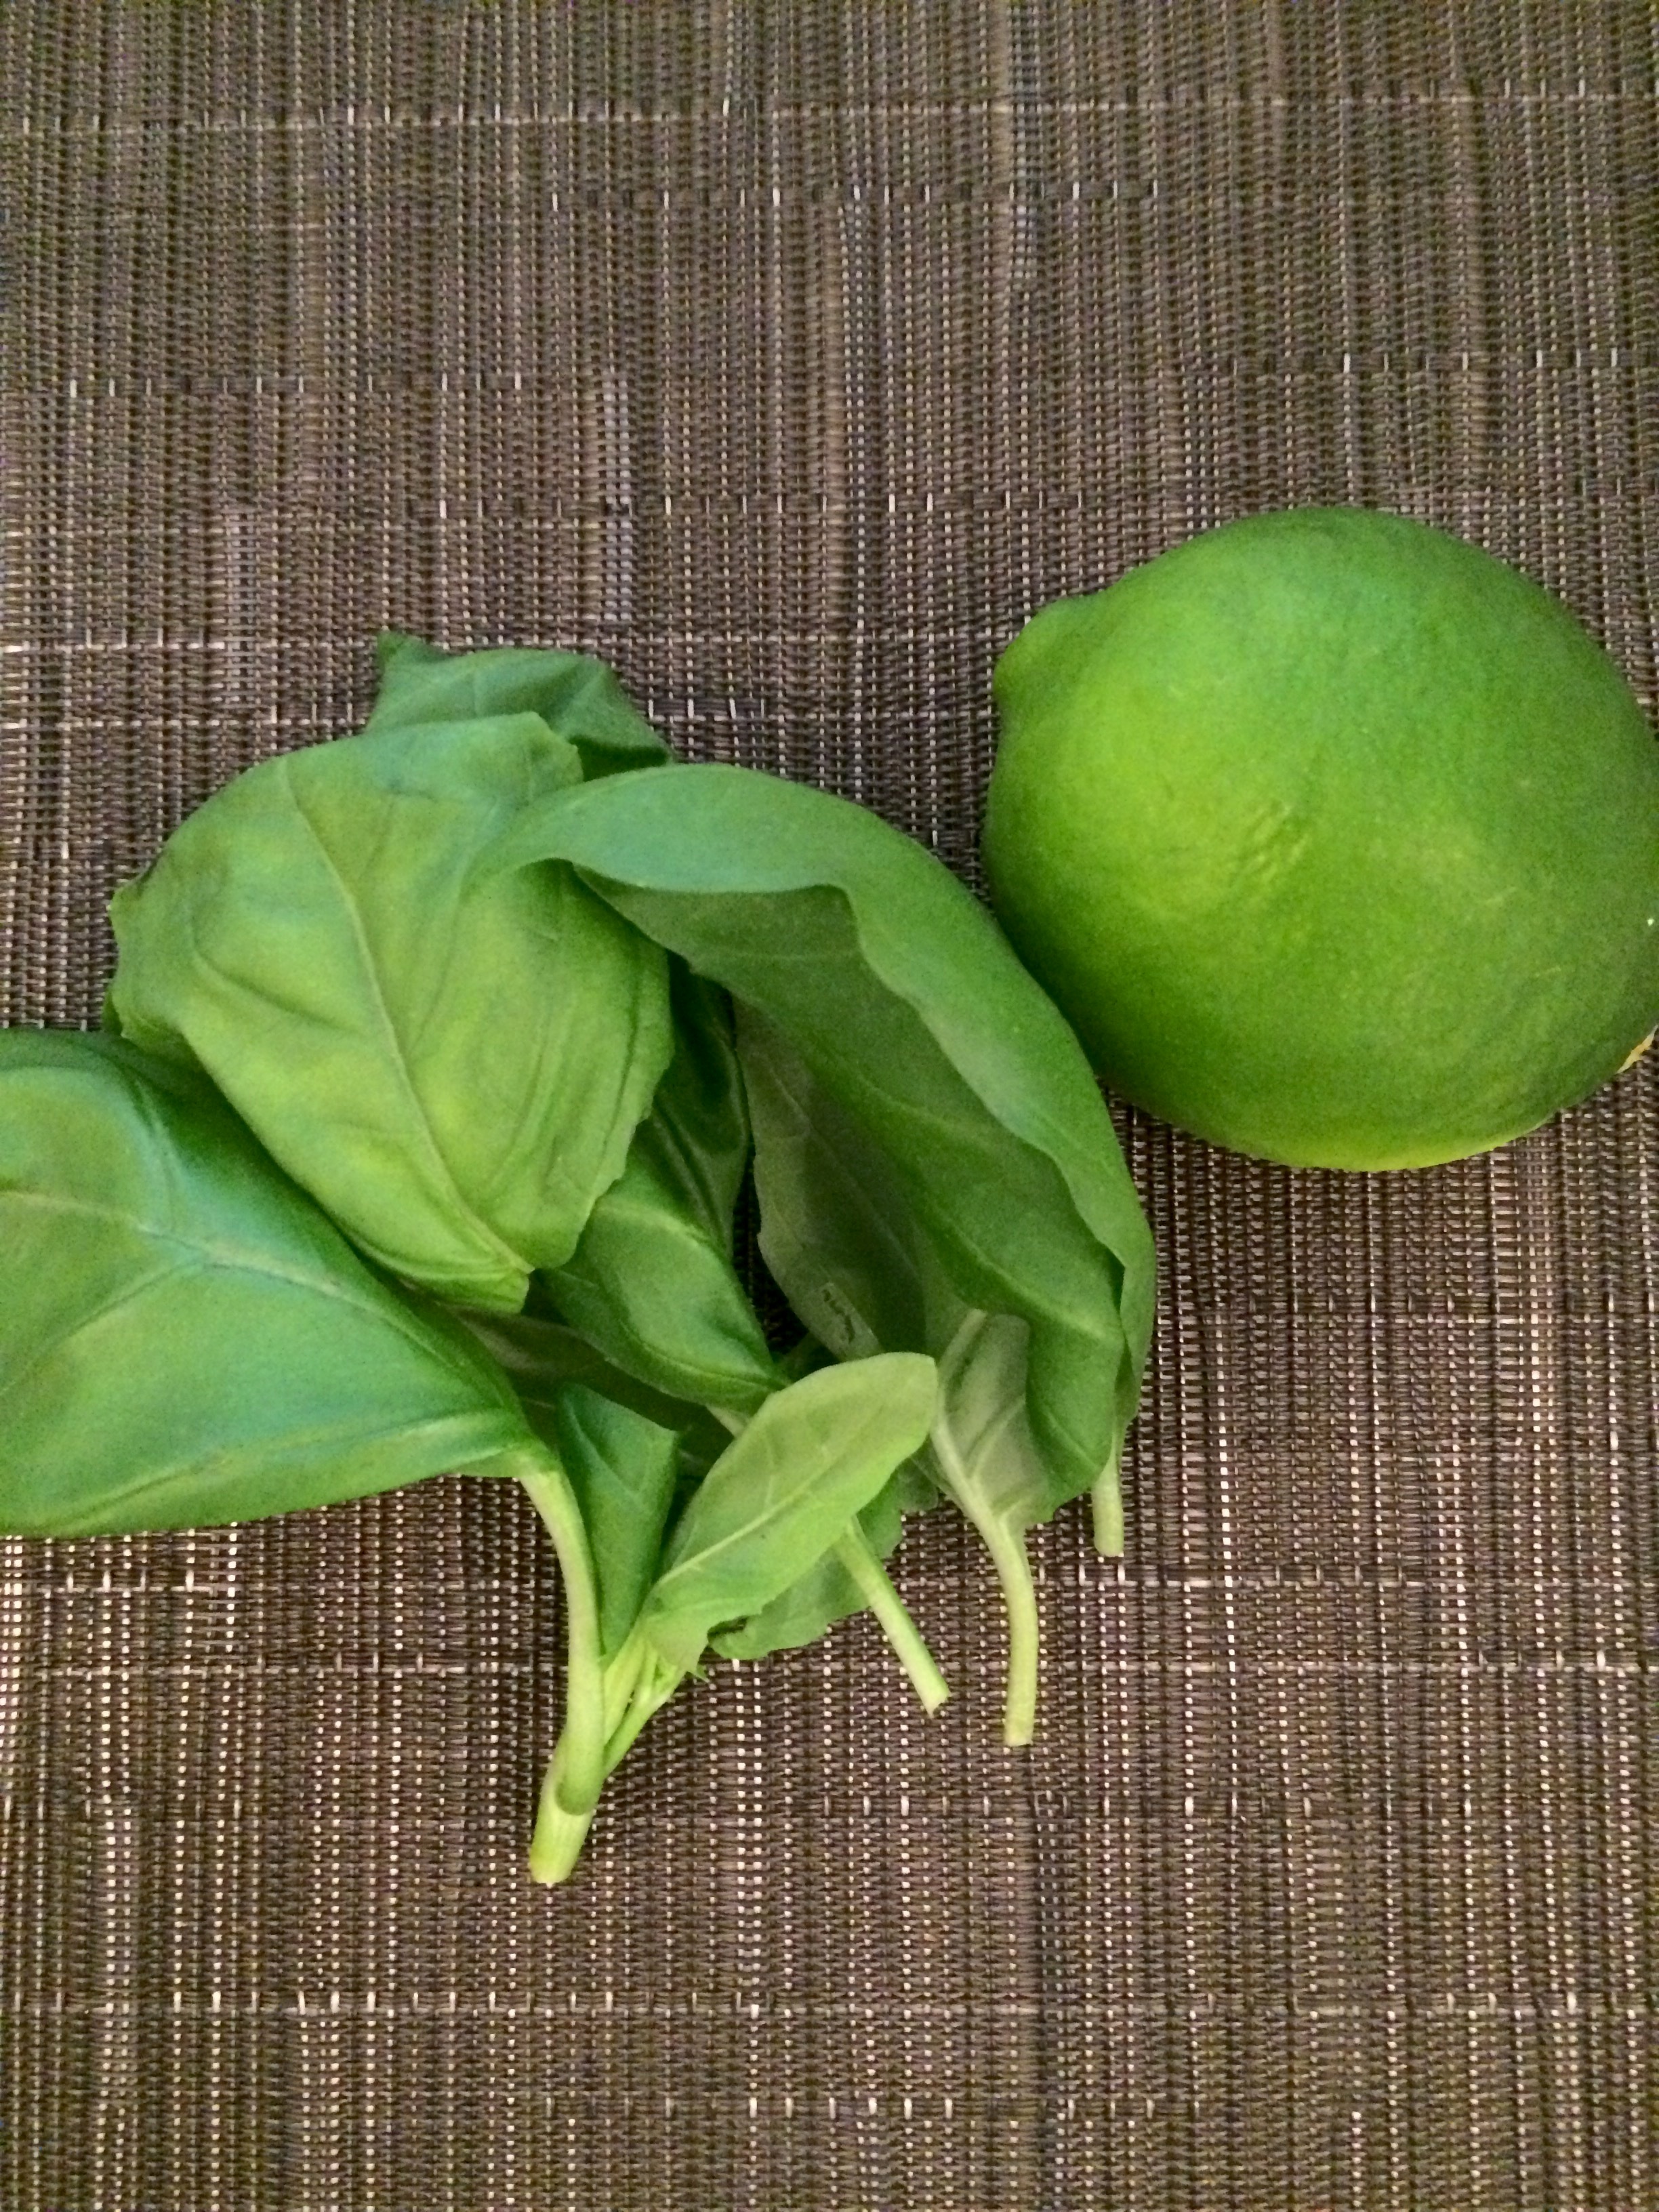 Lime and basil